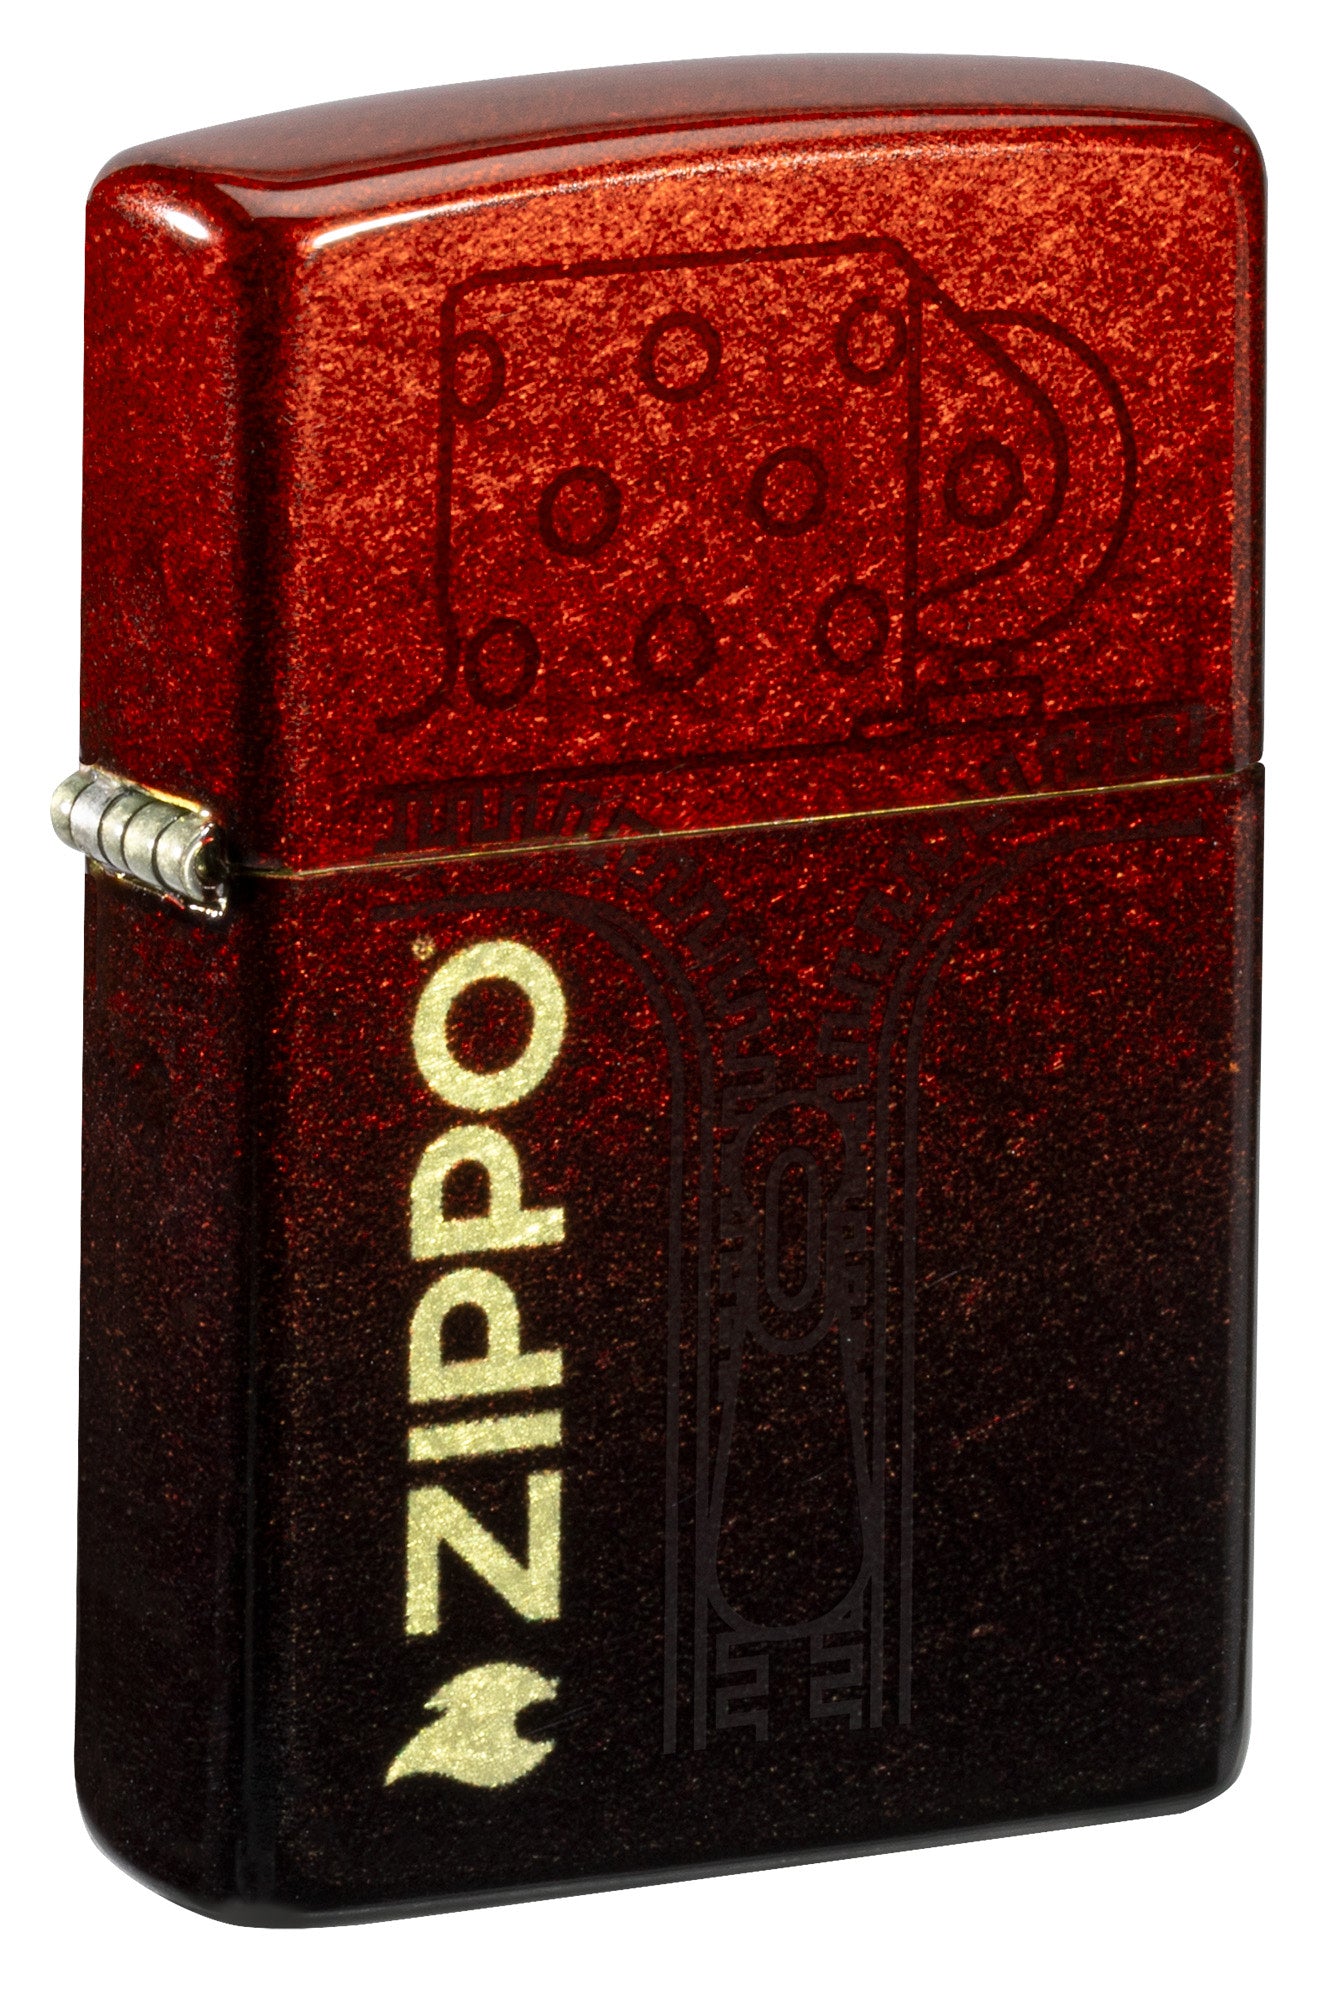 Official Zippo Website | Zippo.com – Zippo USA